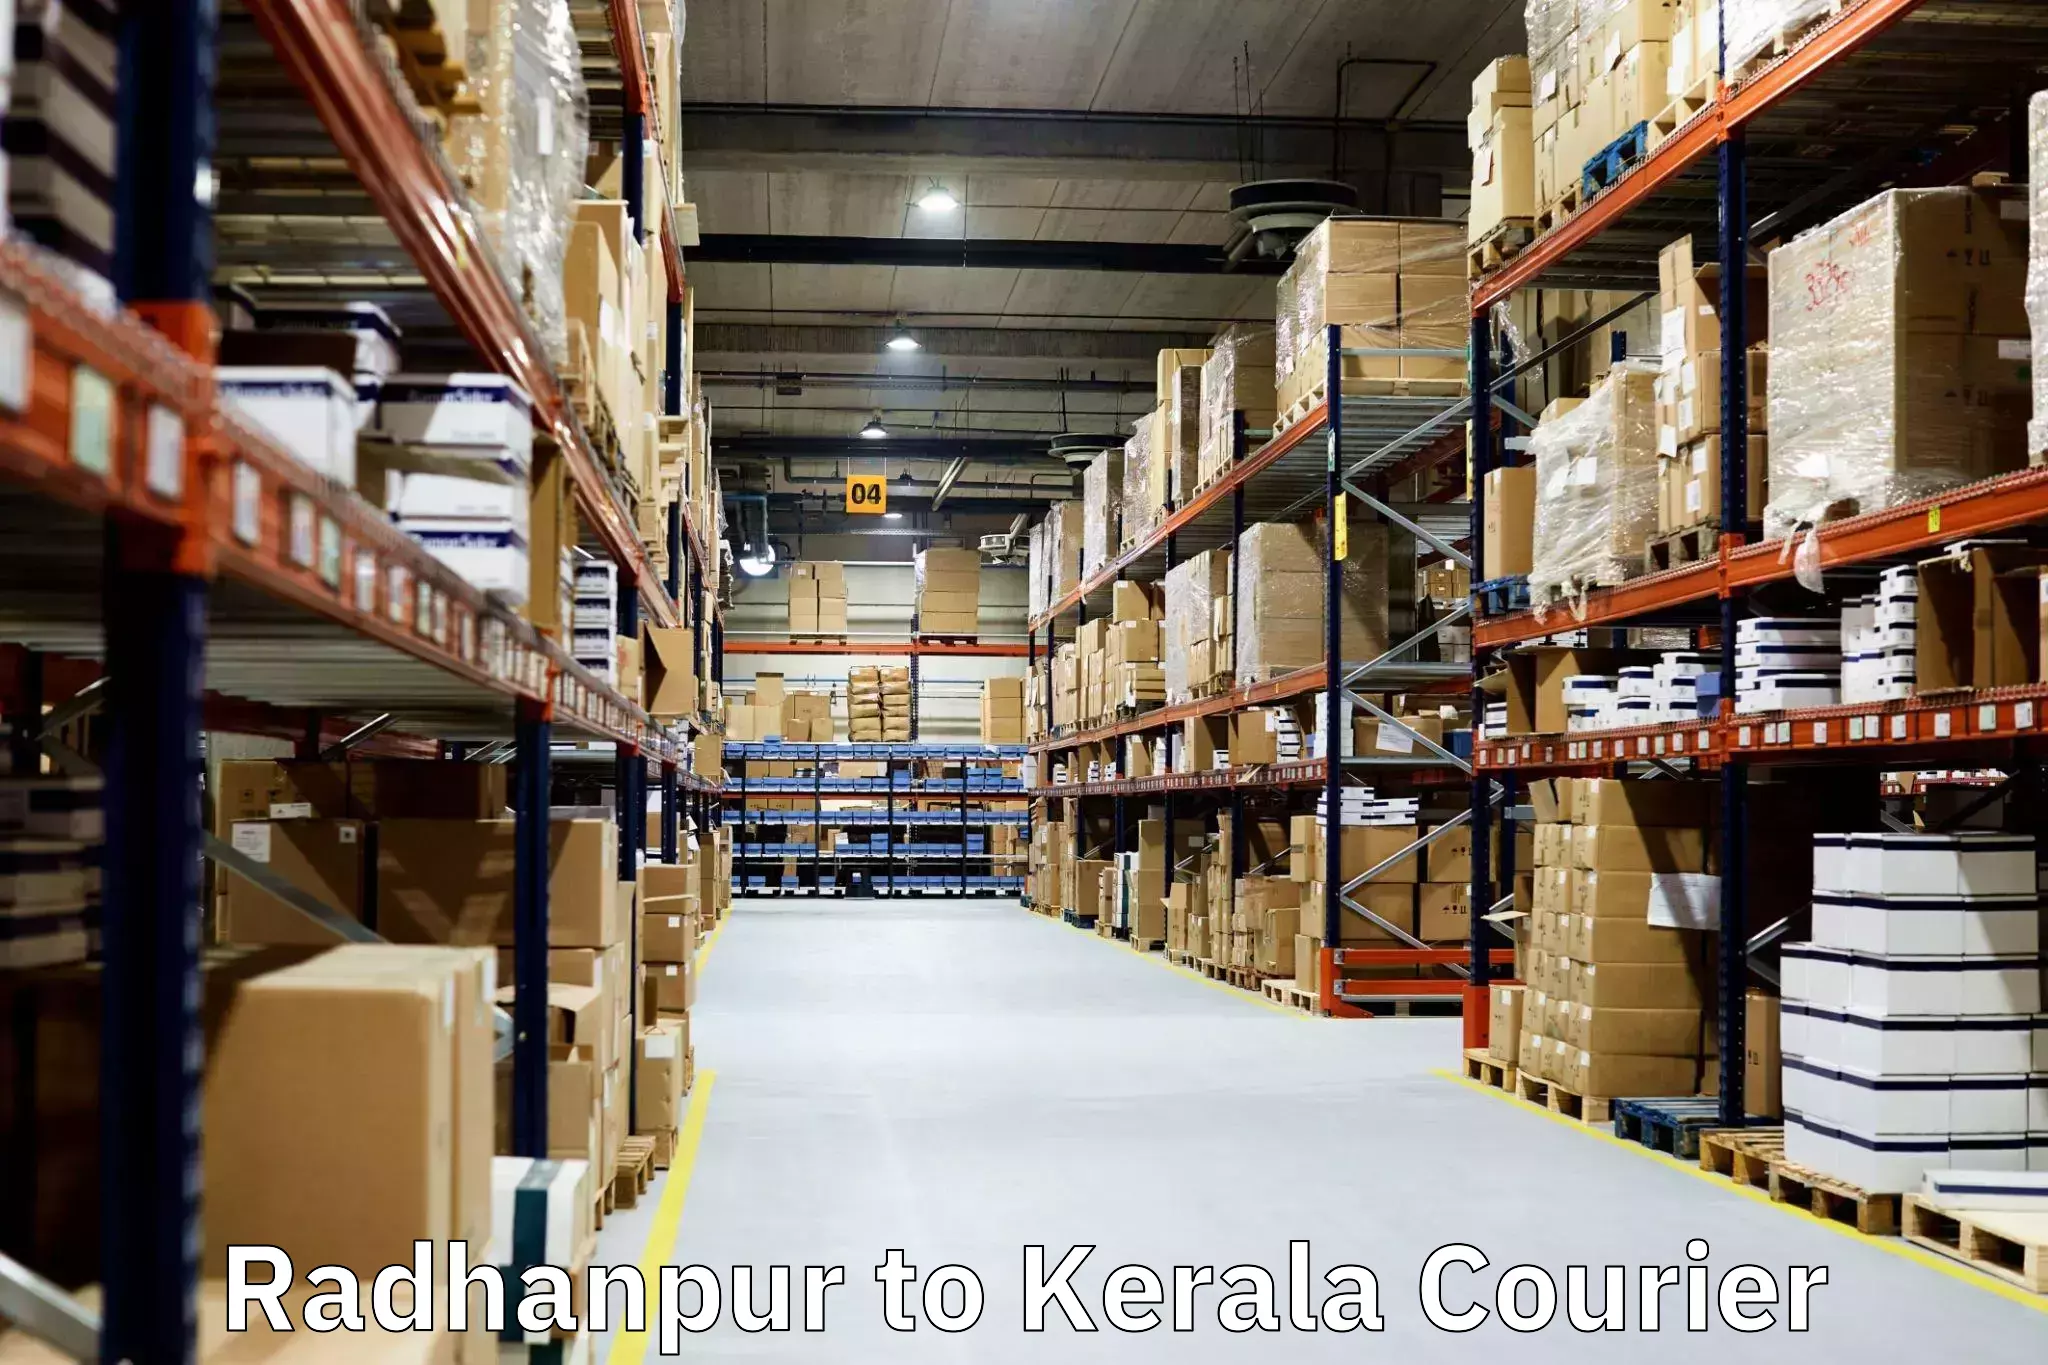 Quality moving company Radhanpur to Kerala